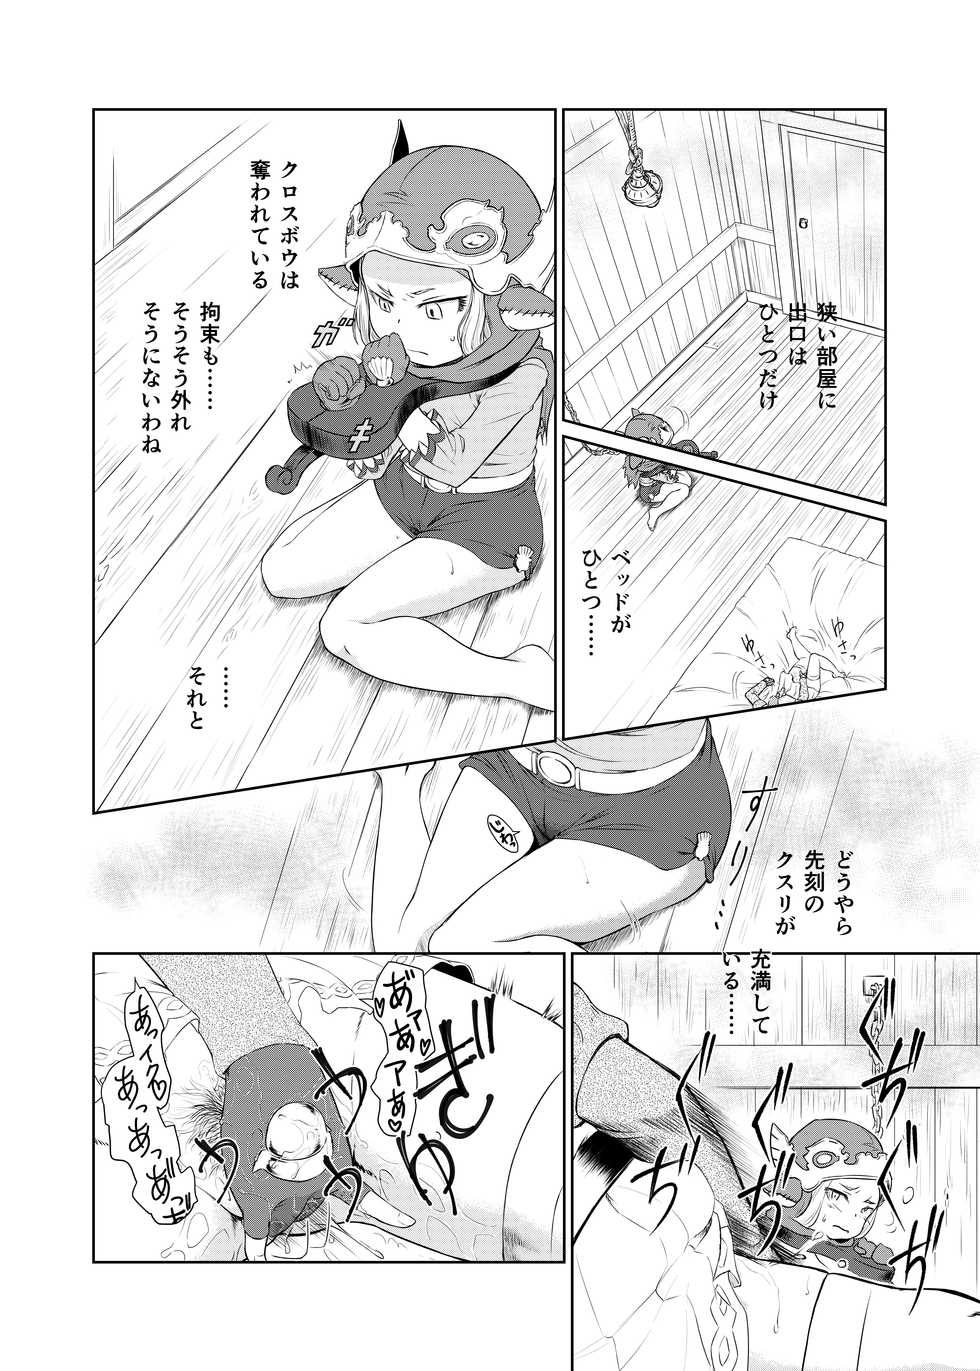 [Inudamashi (Akainu Pochi)] Sora no Soko - Milleore, Sahli Lao no Baai (Granblue Fantasy) [Digital] - Page 5